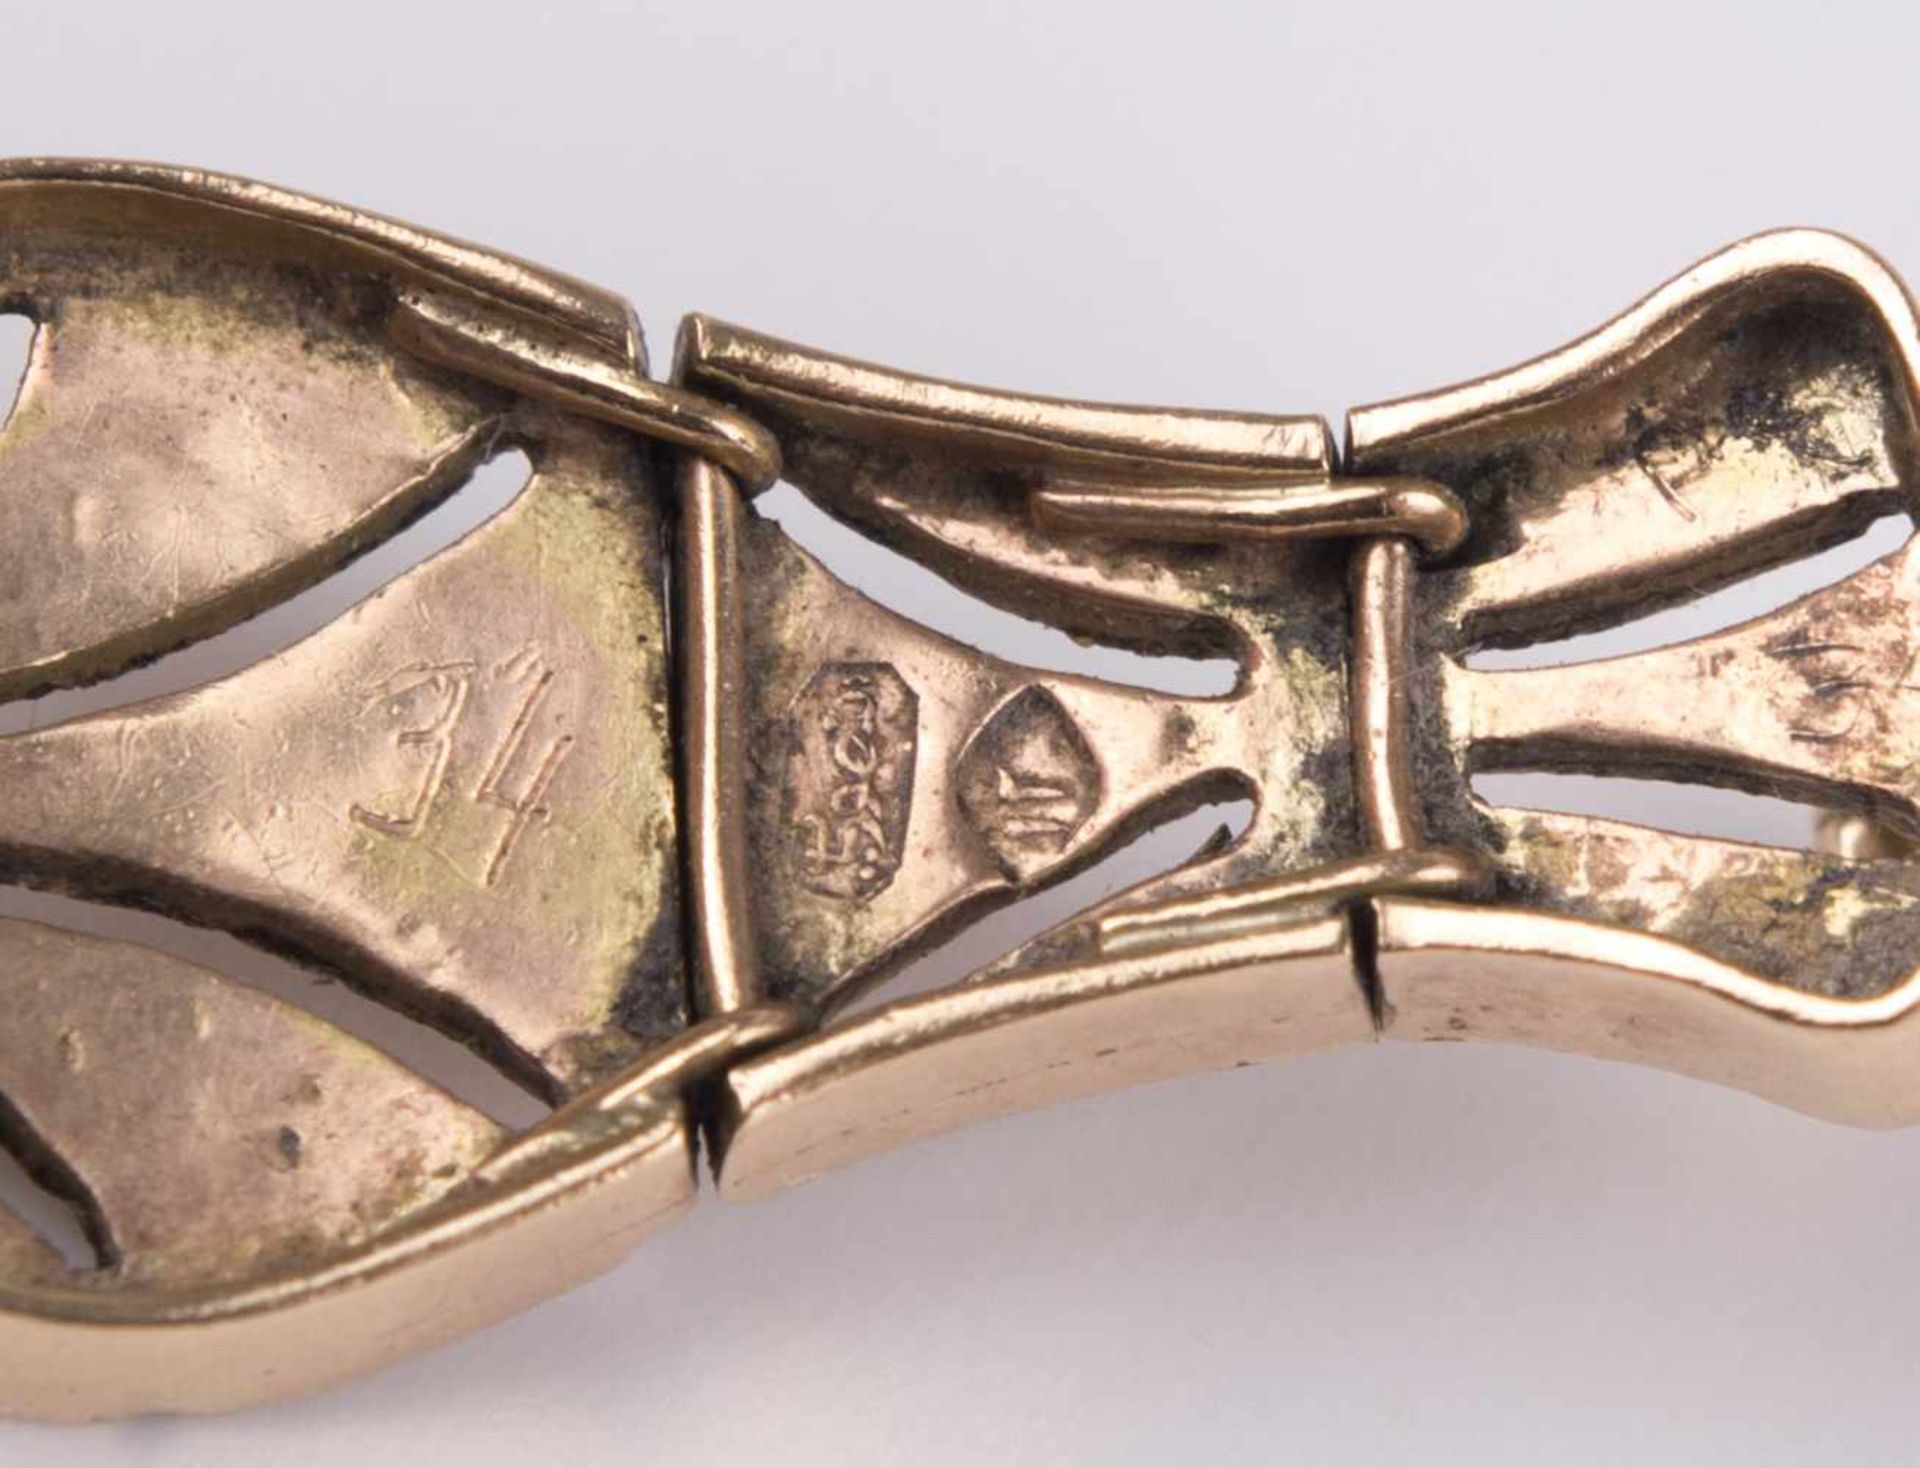 Diamantarmband Türkei um 1900 / diamond bracelet, Turkey about 1900 GG 585/000 geprüft, besetzt - Bild 7 aus 8